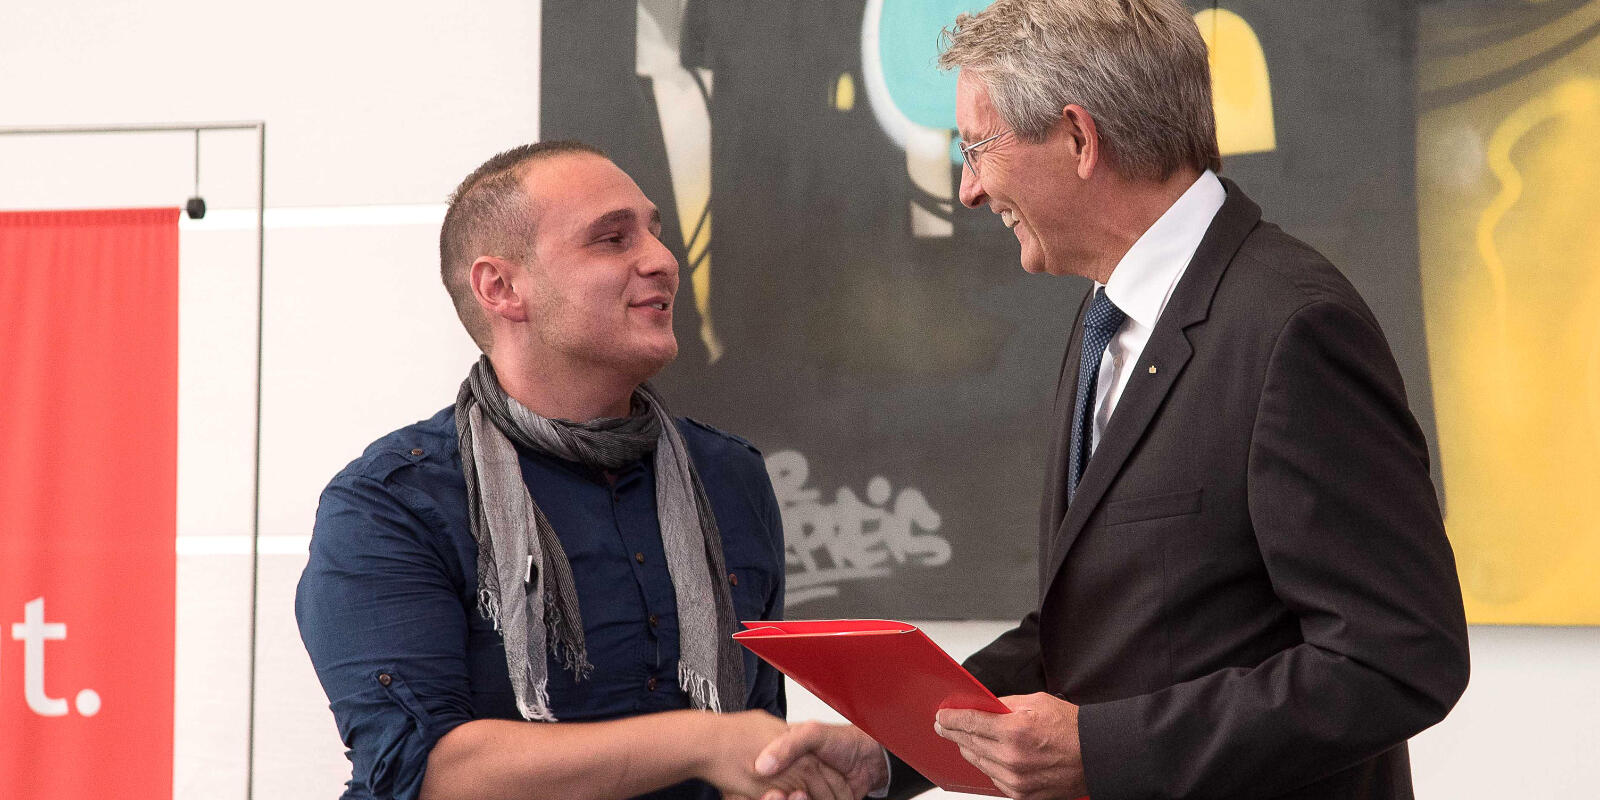 Heinz Mölder schüttelt dem Preisträger Umut Ali Öksüz die Hand